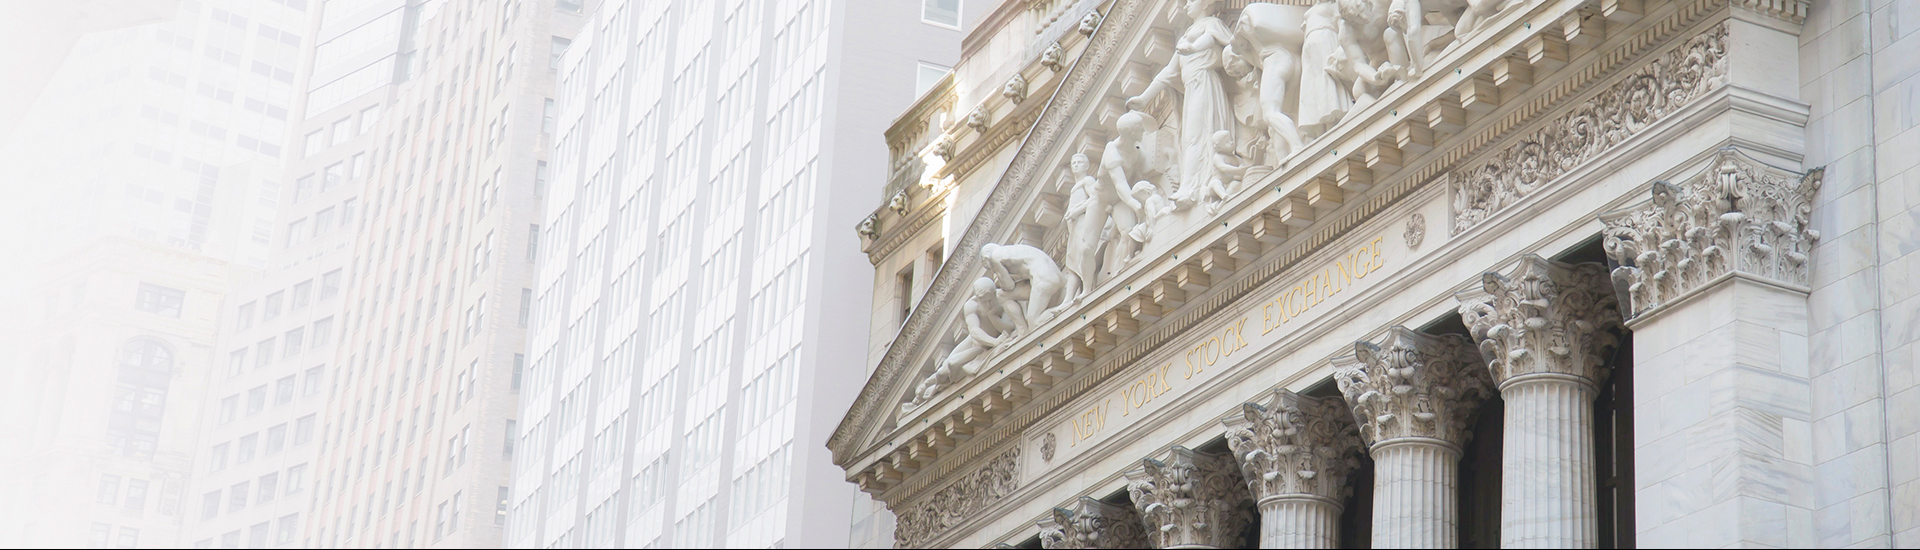 NYSE Facade